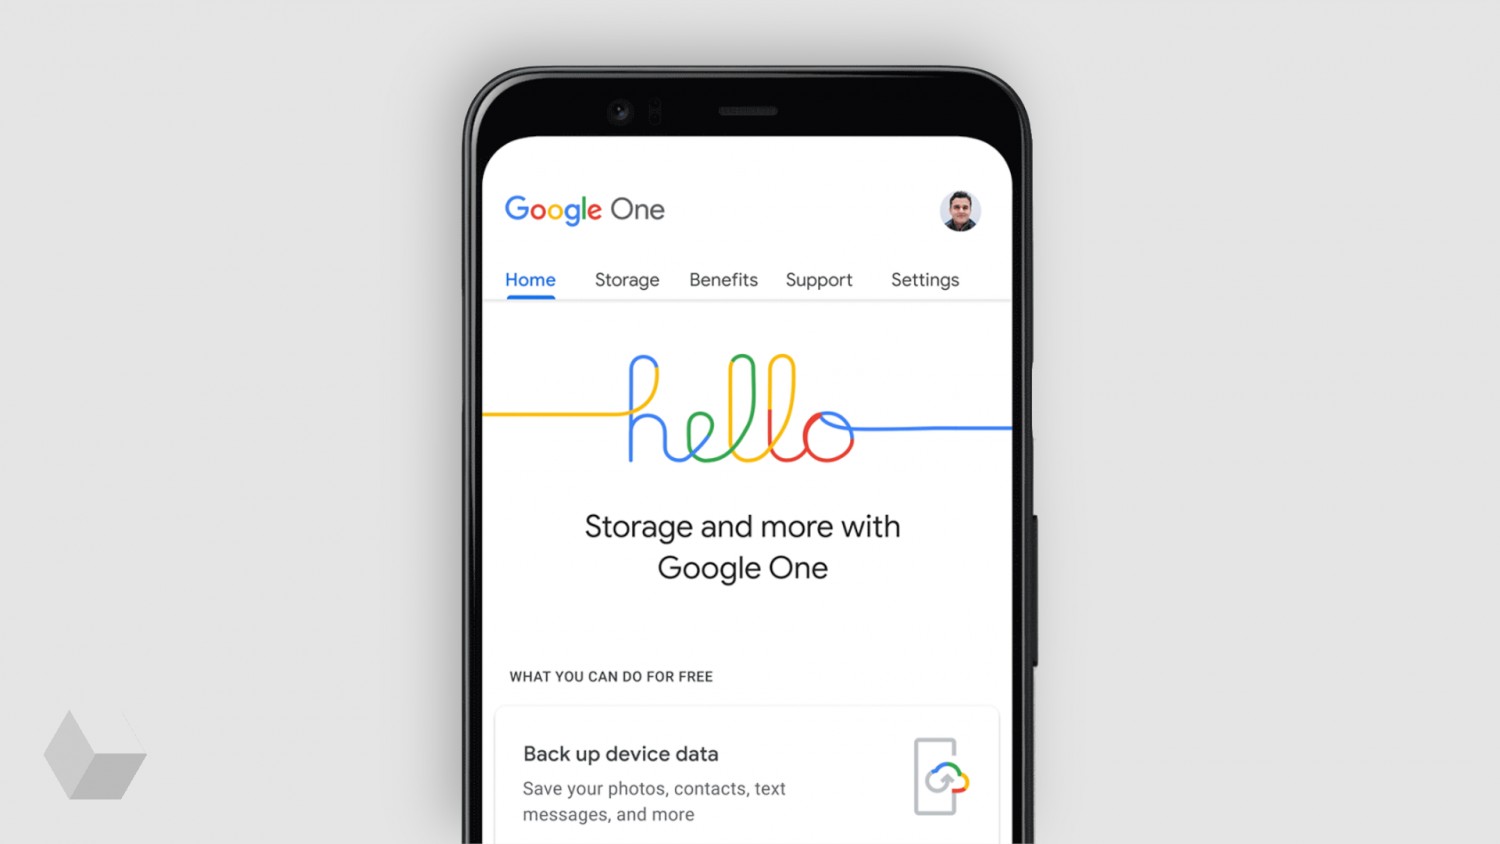 Приложение Google One с функцией бэкапа системы скоро появится на iOS